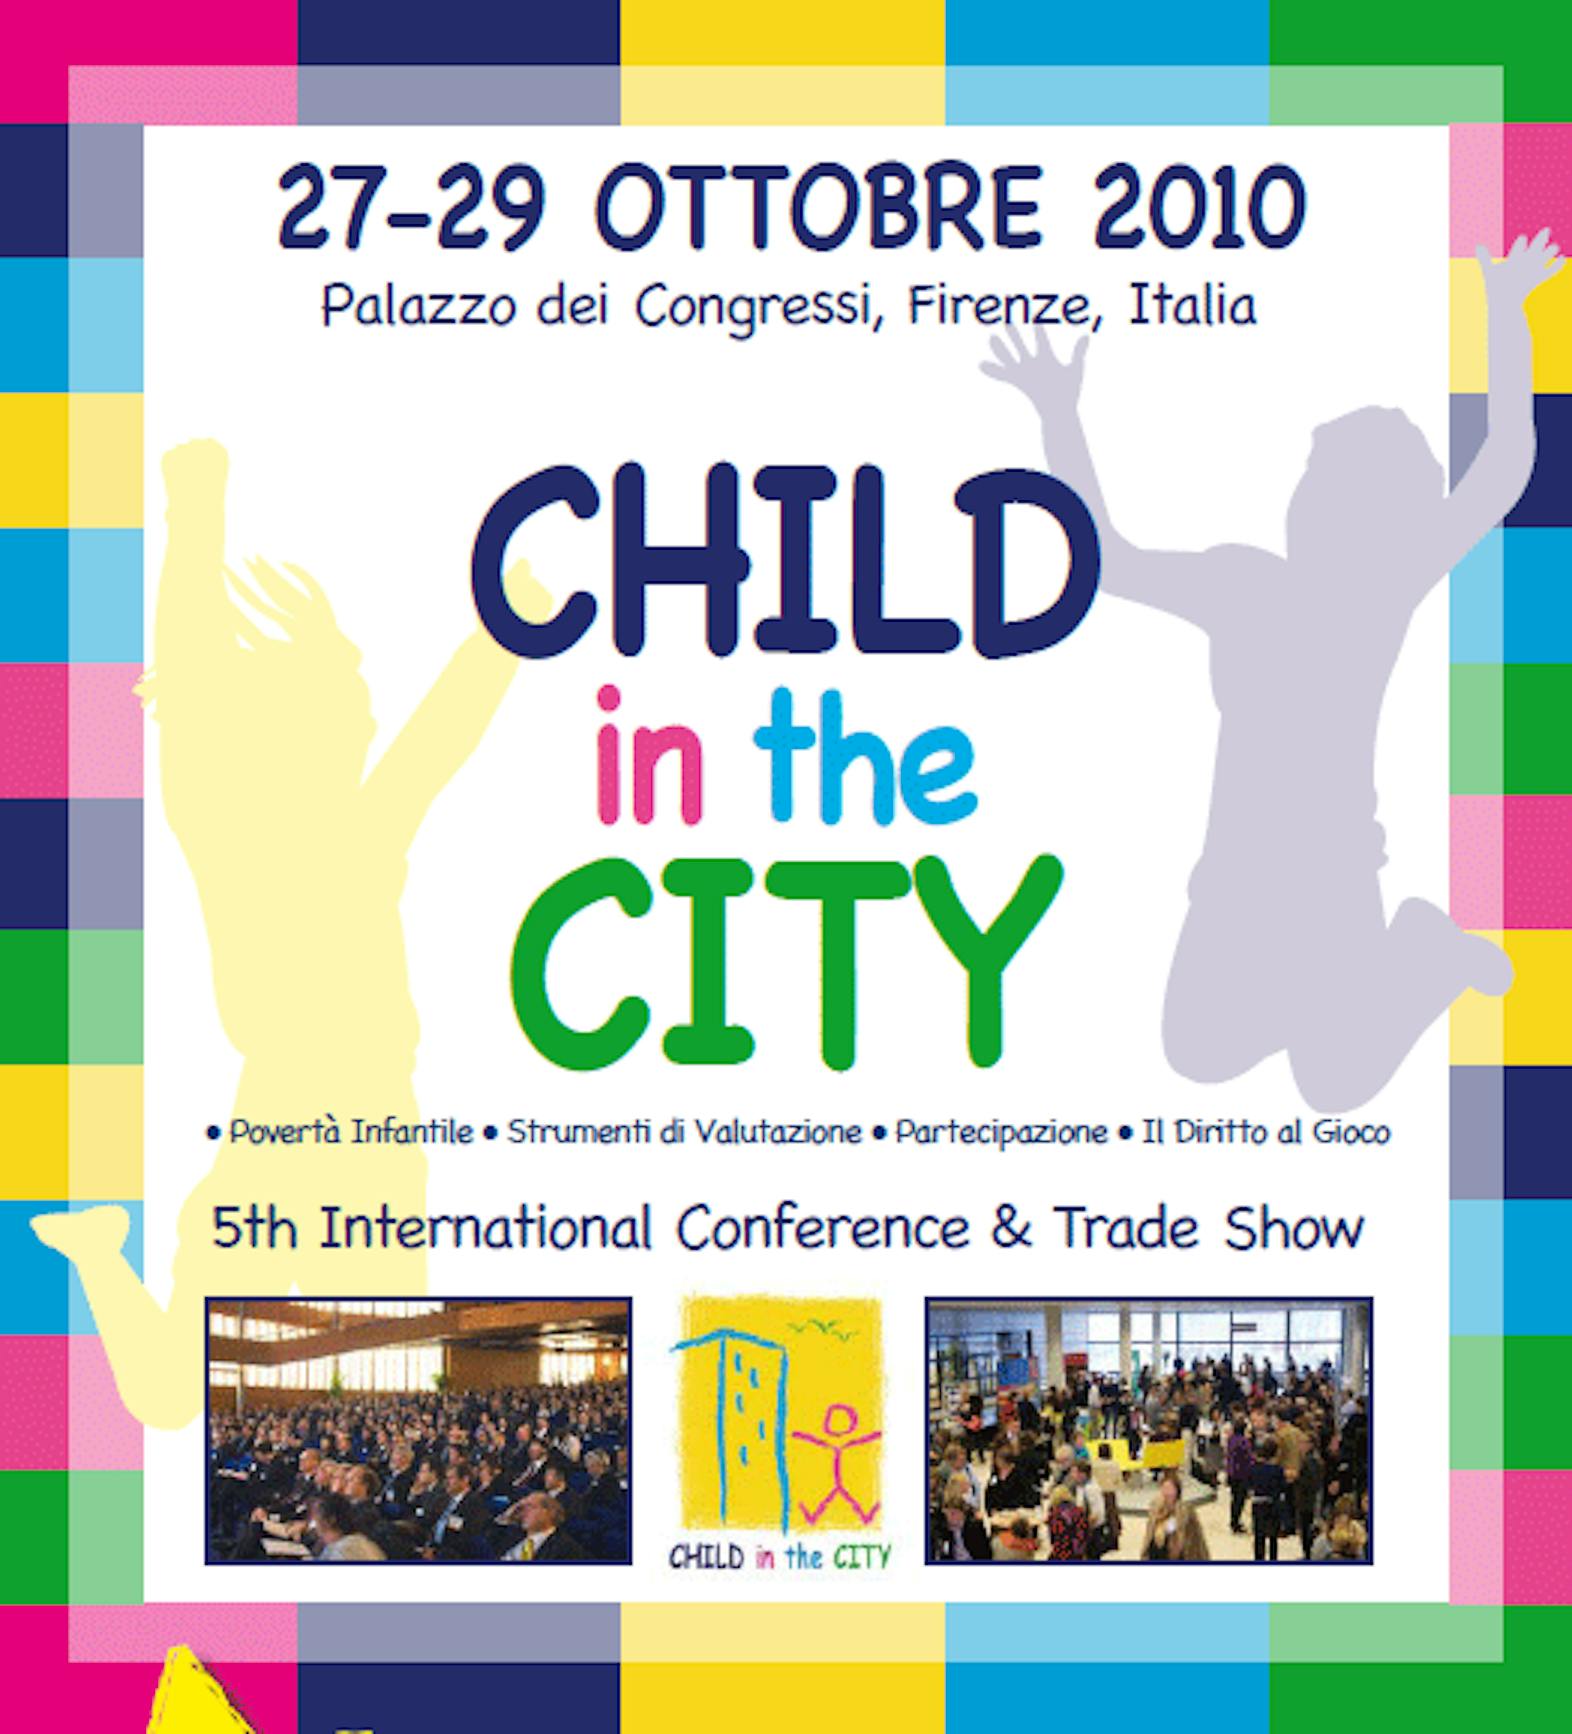 ©Child in the City Foundation/Rete Europea delle Città Amche dei Bambini